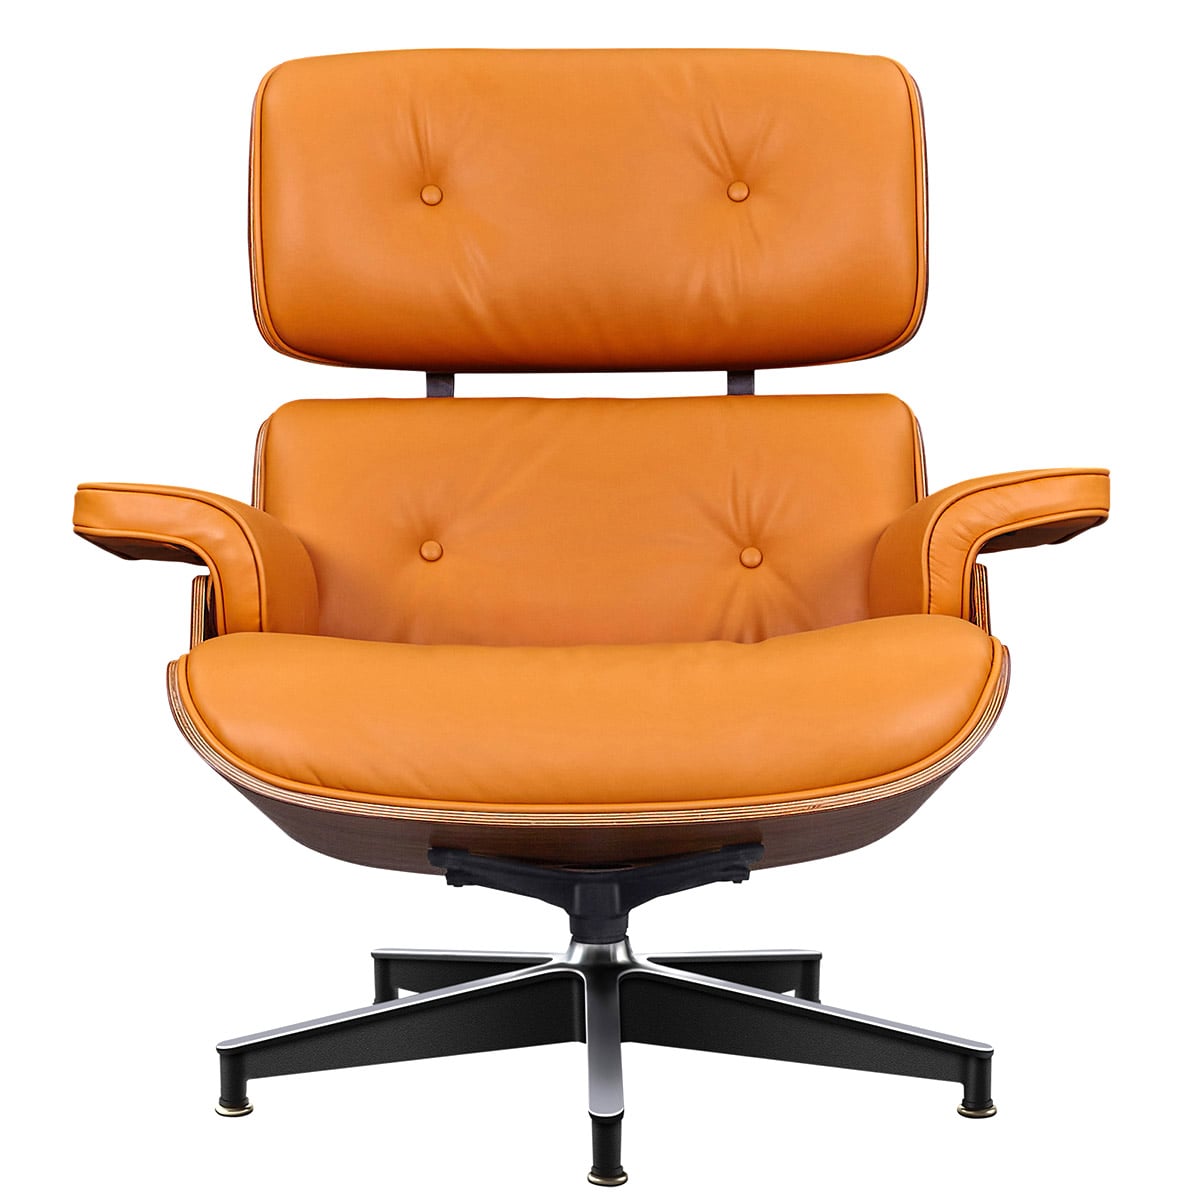 XL eames lounge chair CKTY328